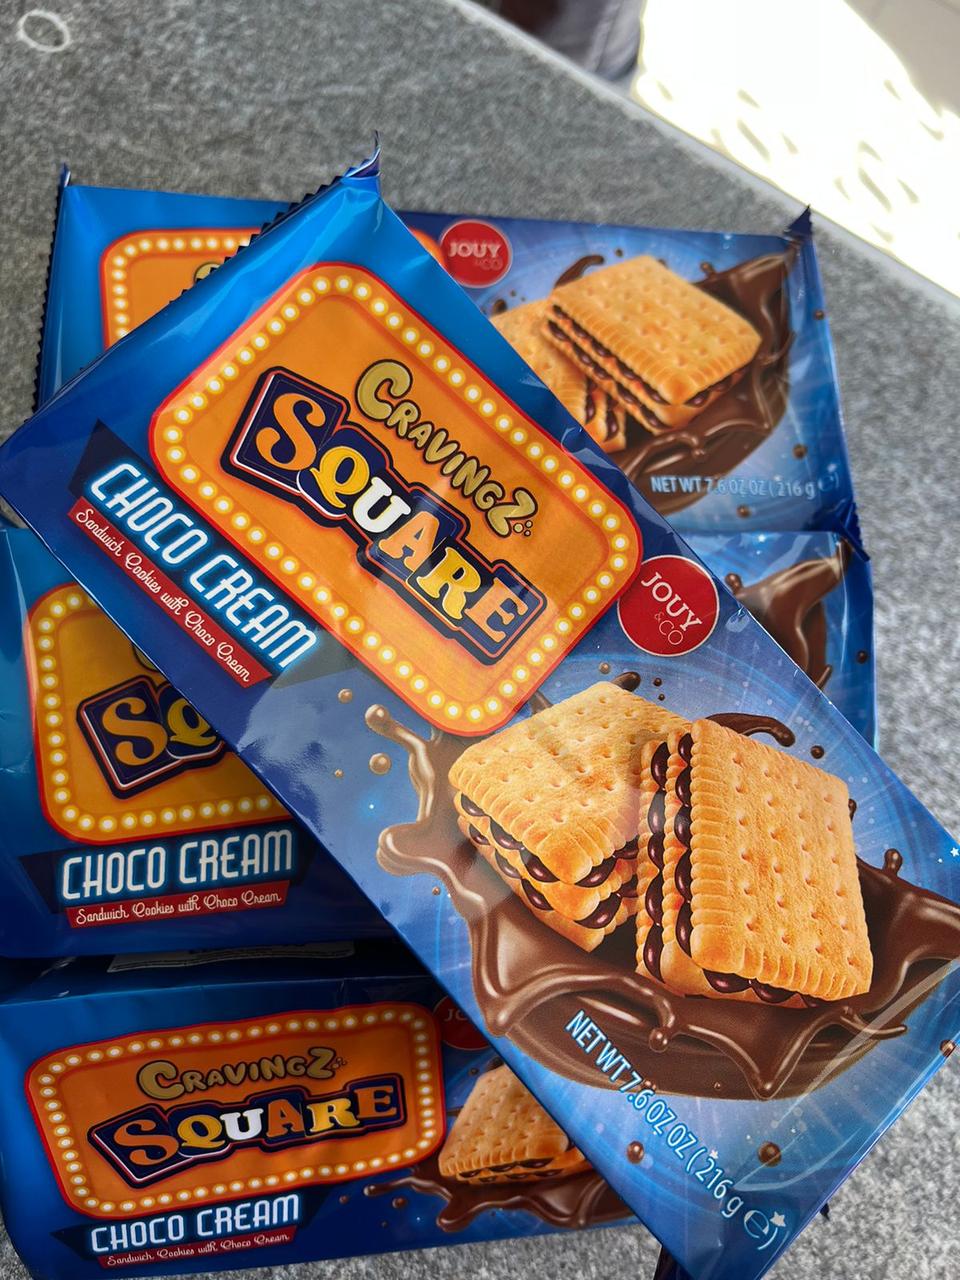 Печенье с шоколадным кремом Square 216 гр / Германия